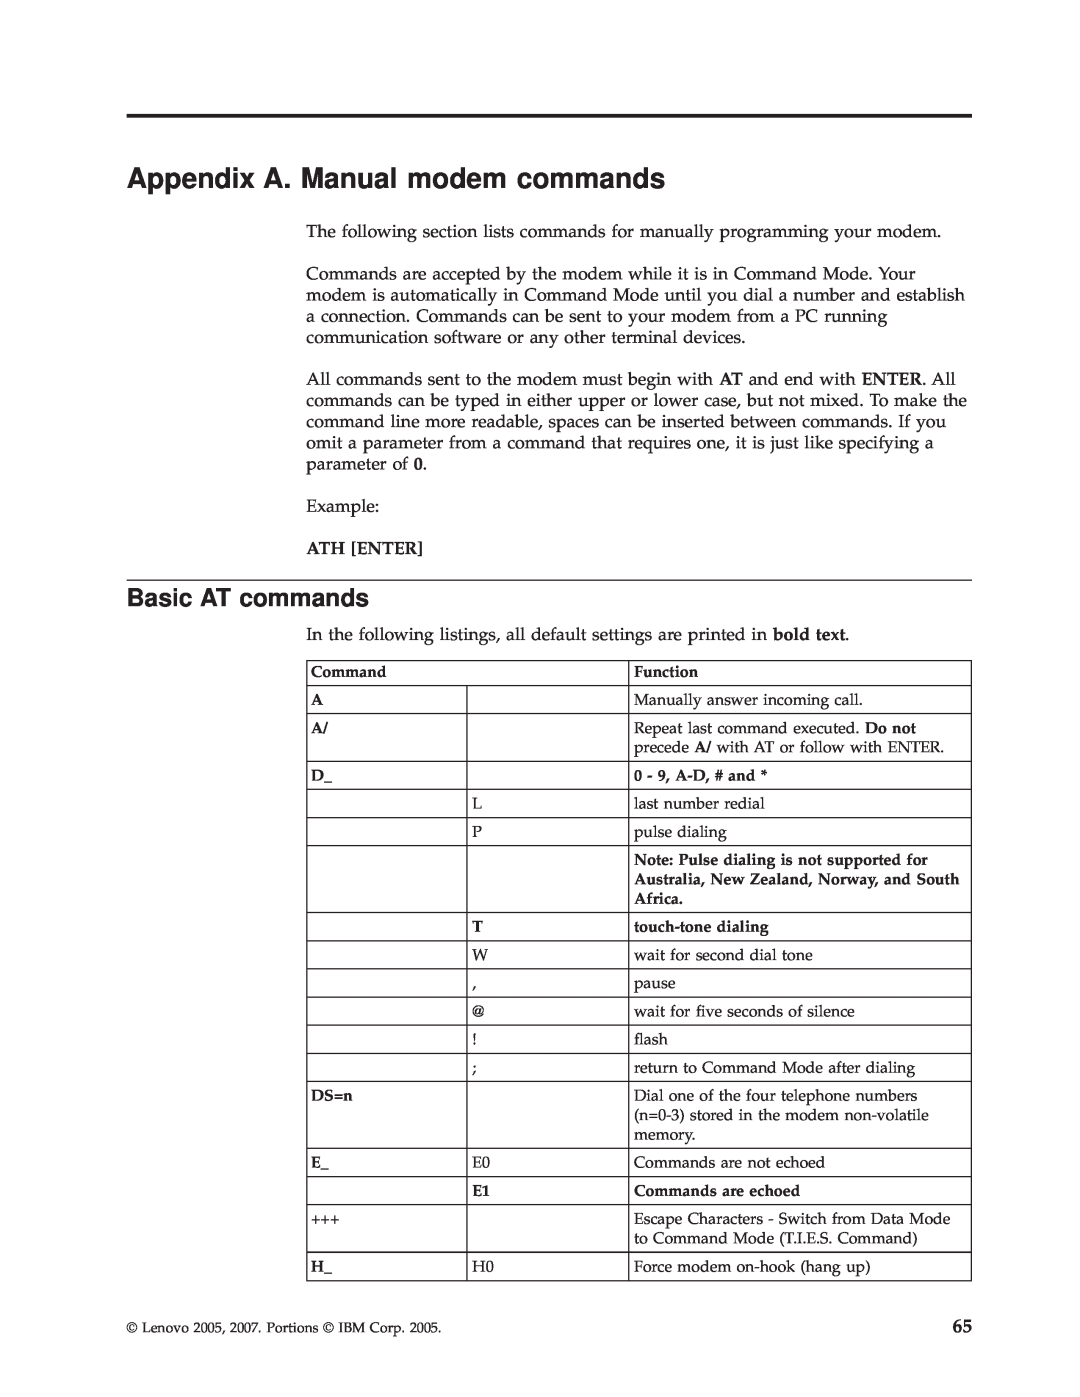 Lenovo TC A55-9636, 9638, 9643, 9644, 9645, 9640 manual Appendix A. Manual modem commands, Basic AT commands 